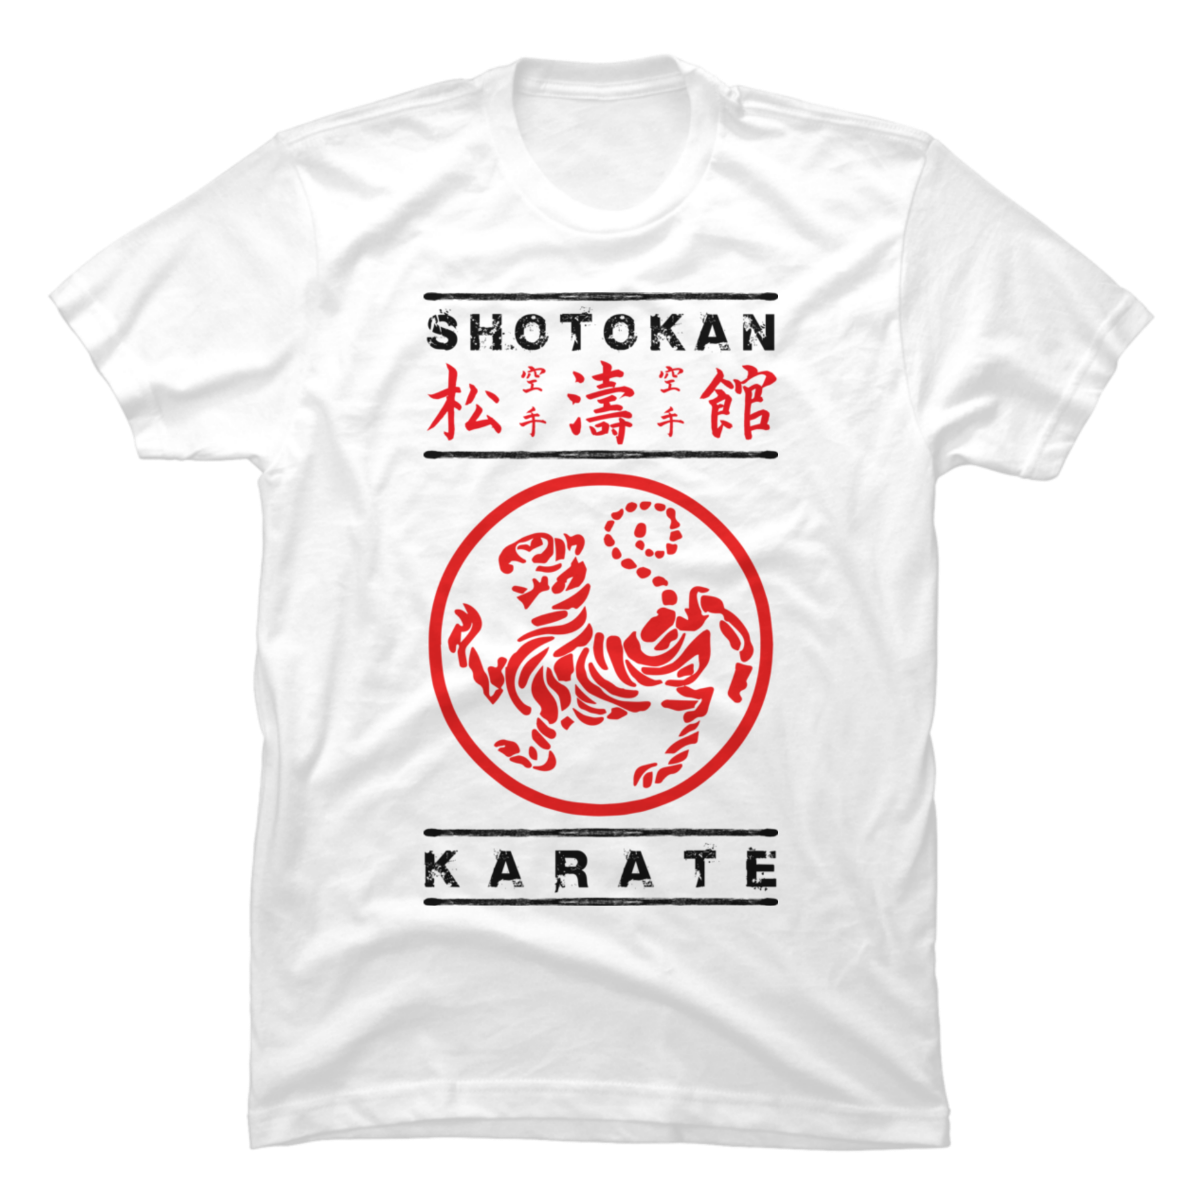 shotokan karate t shirt